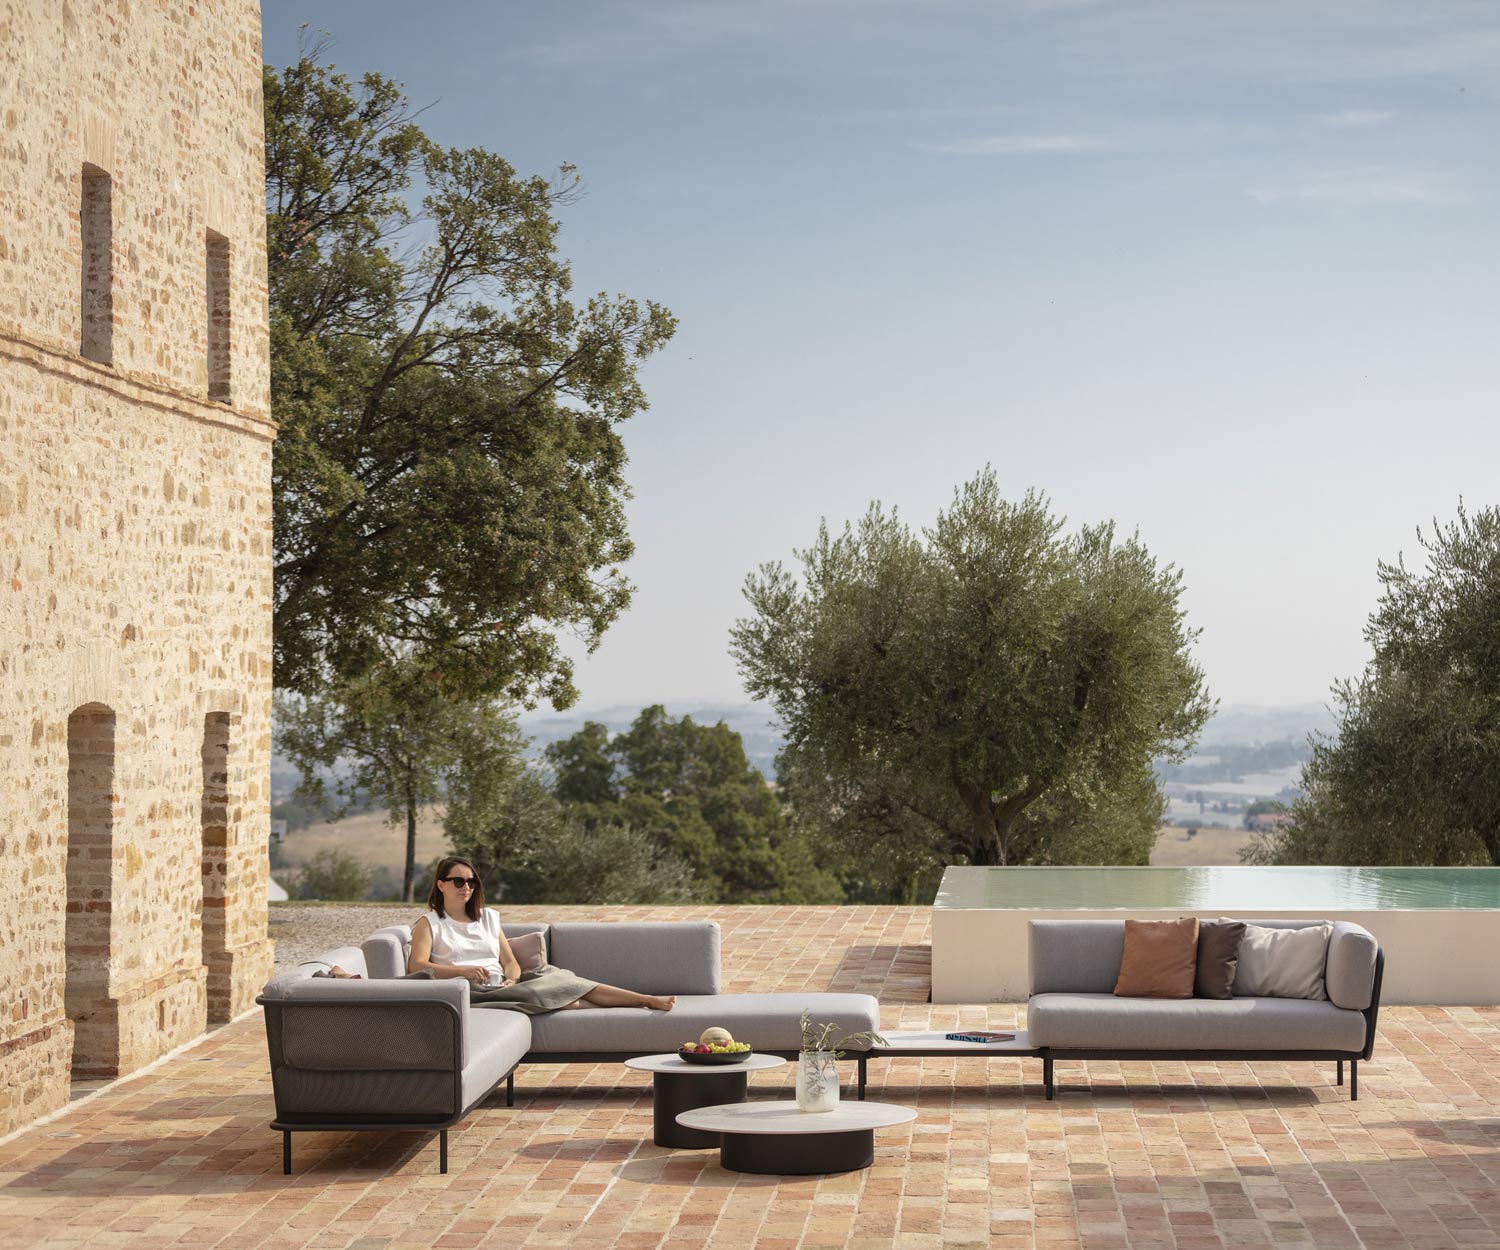 Mediterrane levensstijl met de Todus Baza design tuinbank op het terras